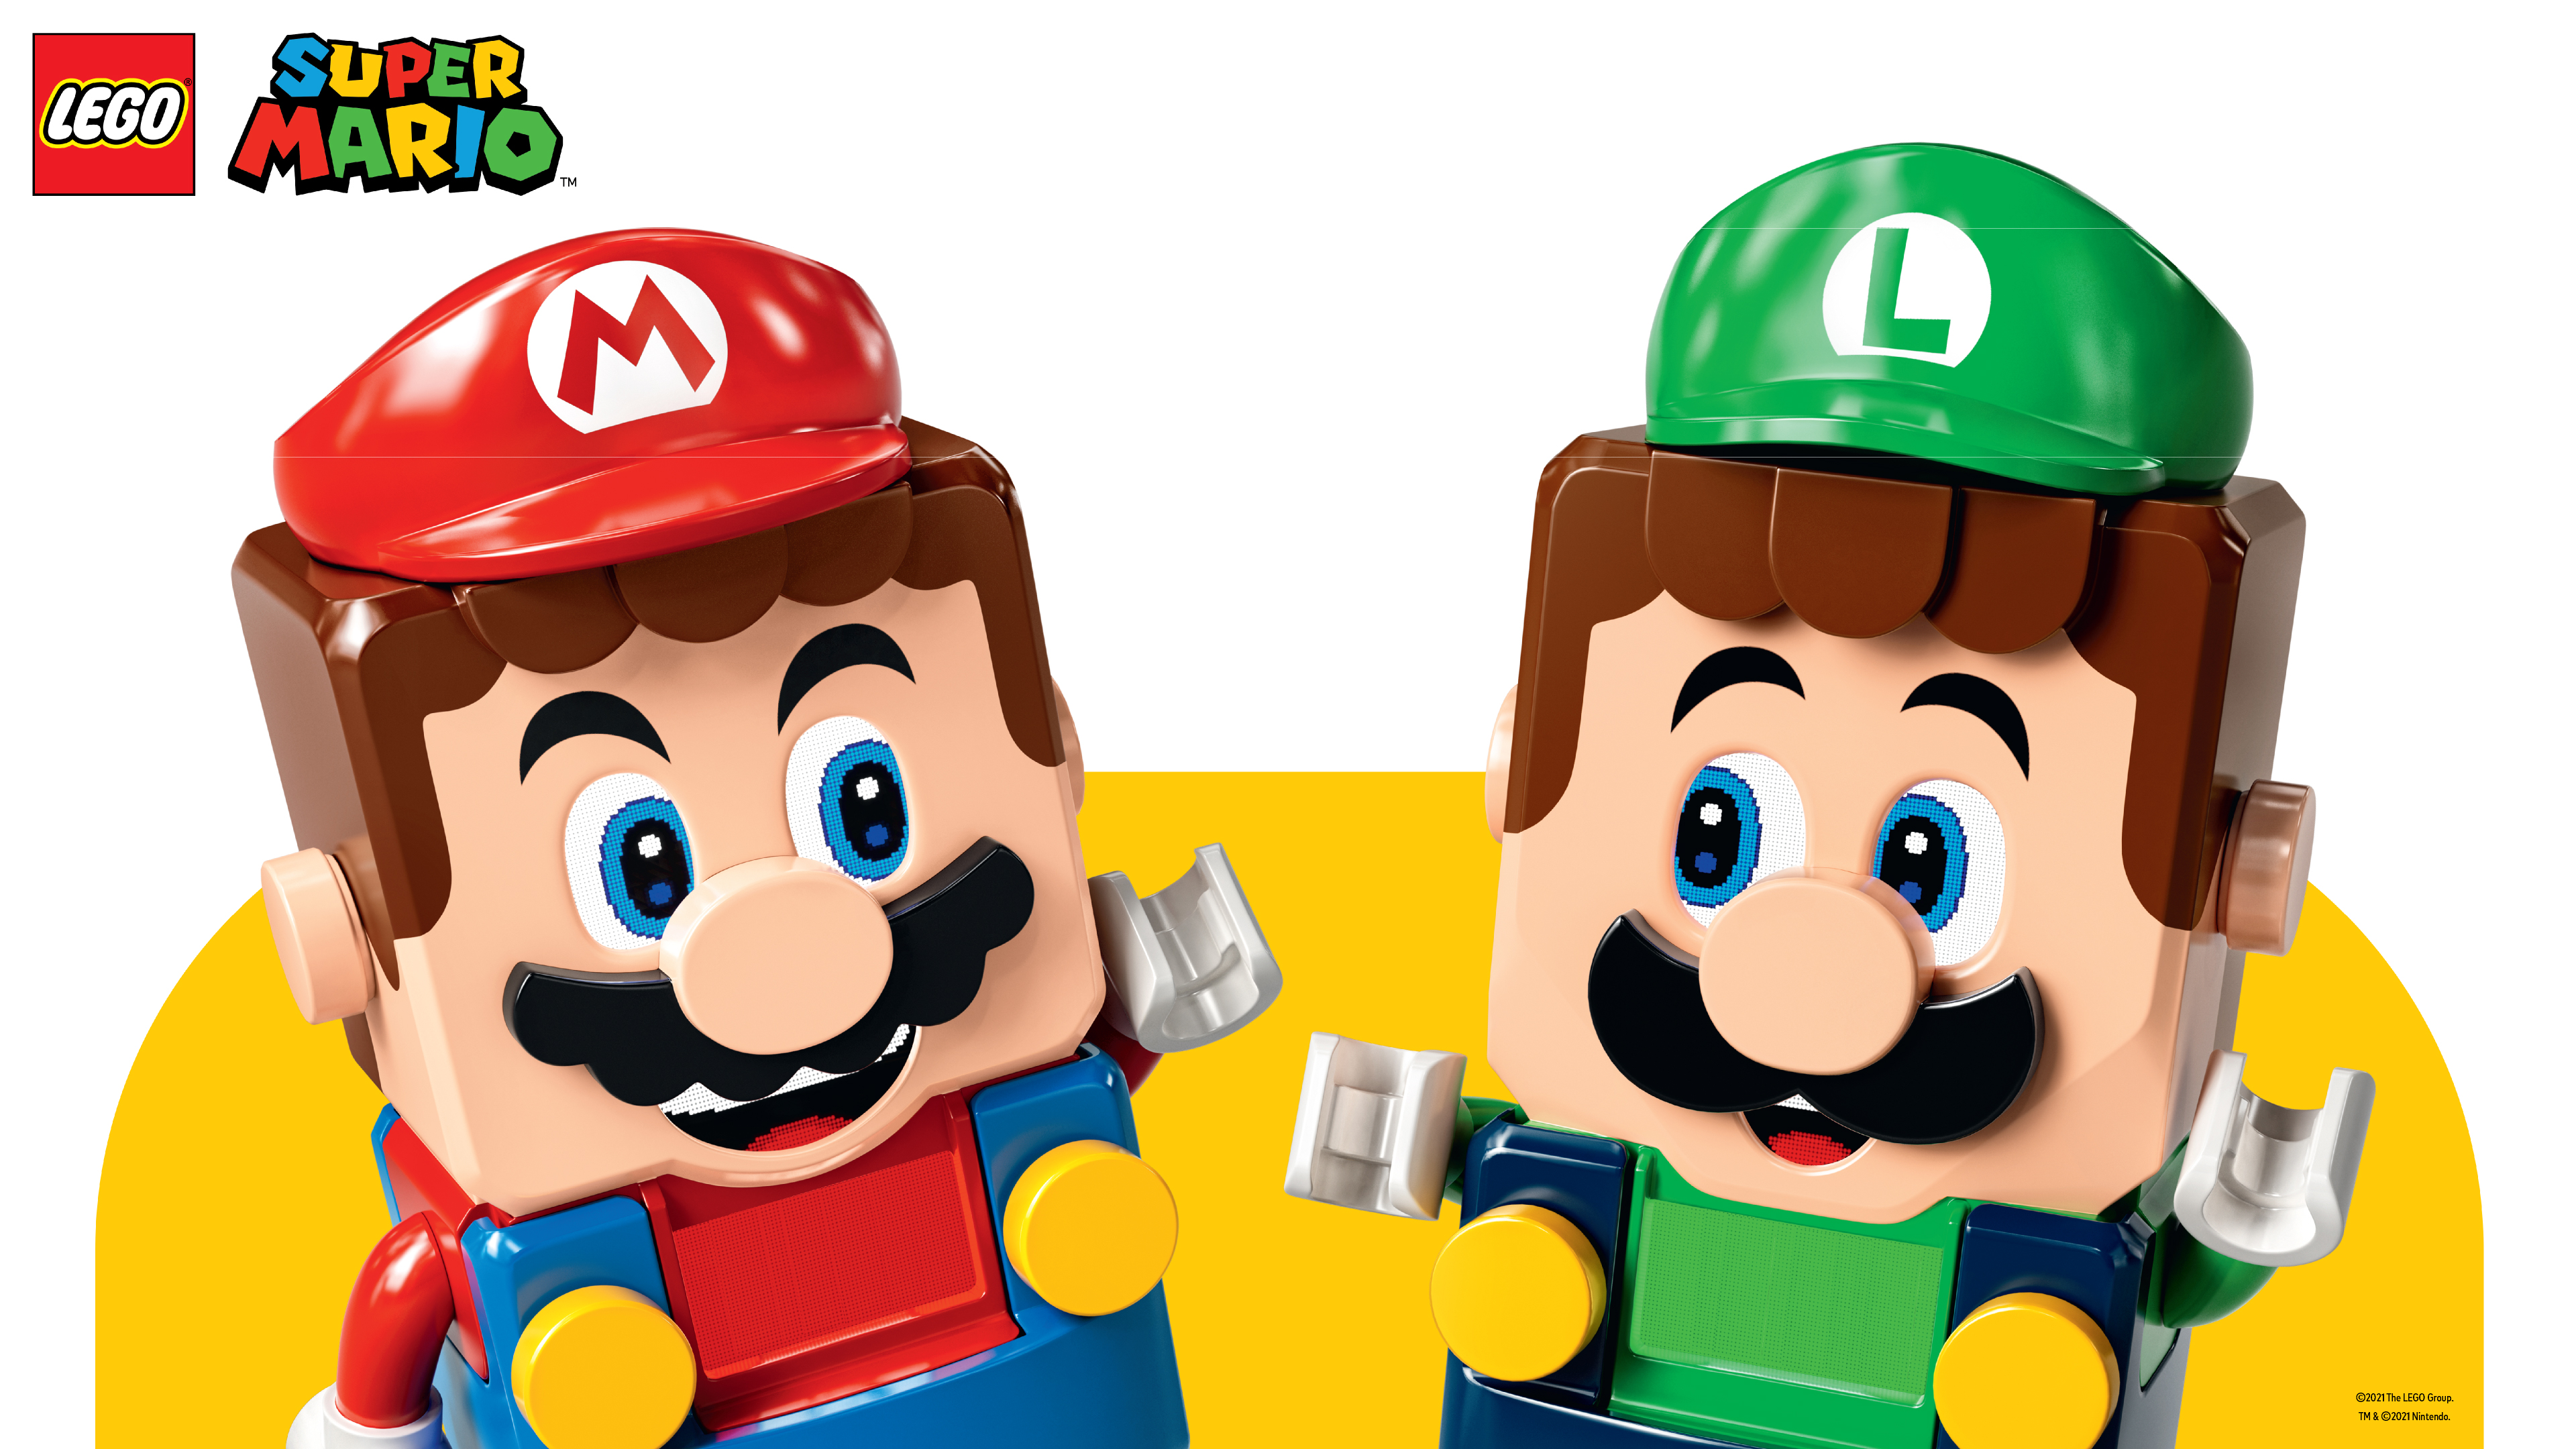 Скачать обои Лего Супер Марио на телефон бесплатно